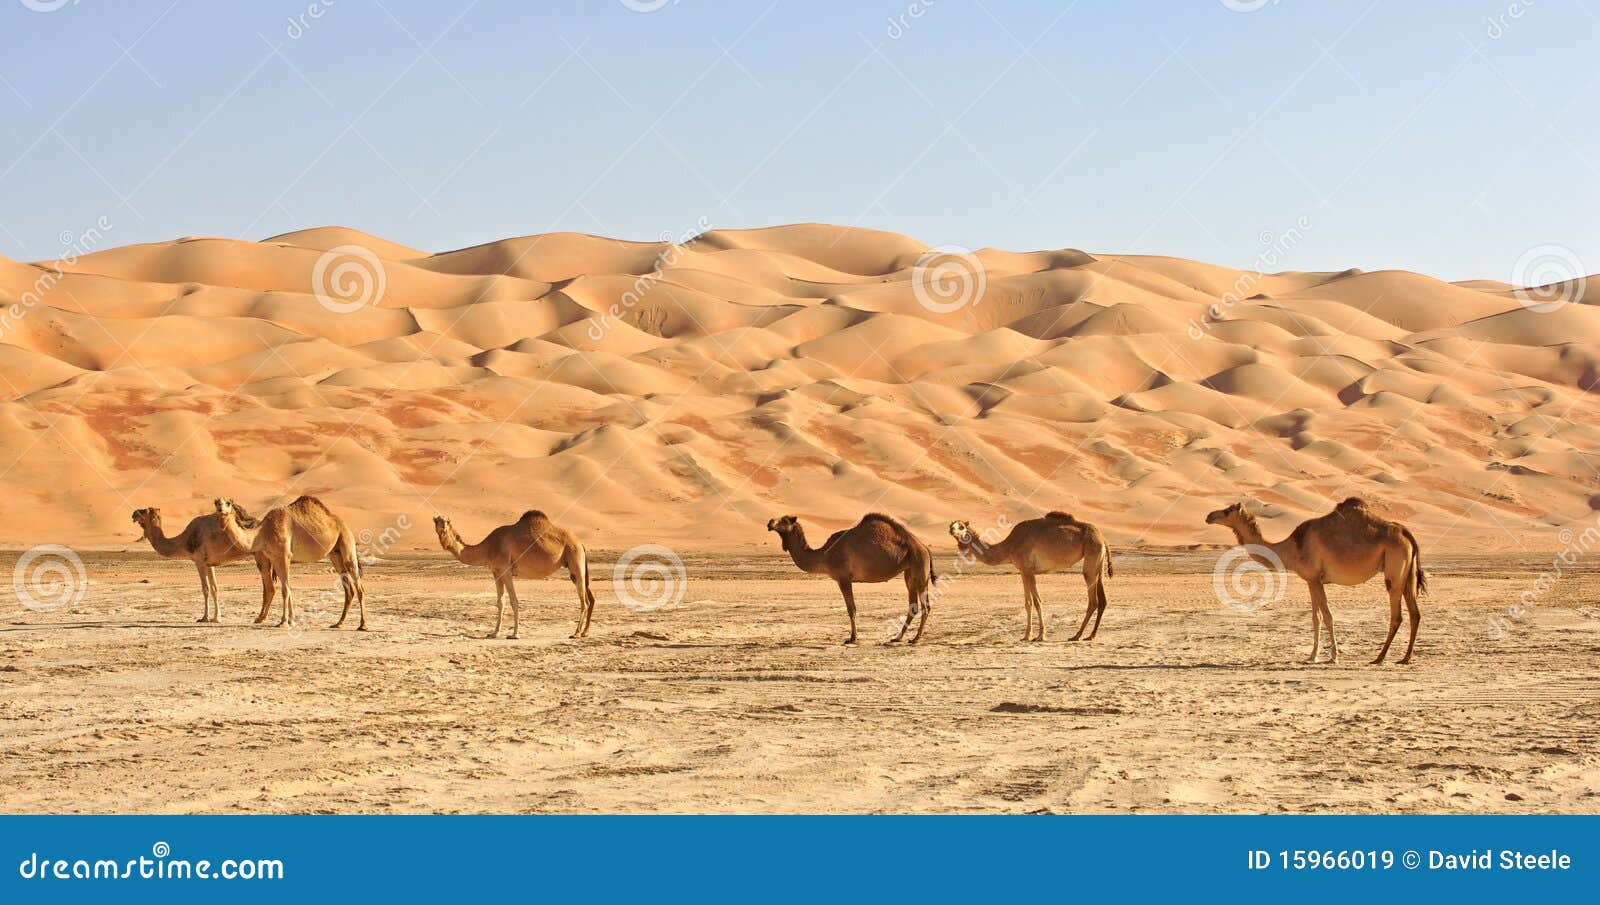 empty quarter camels